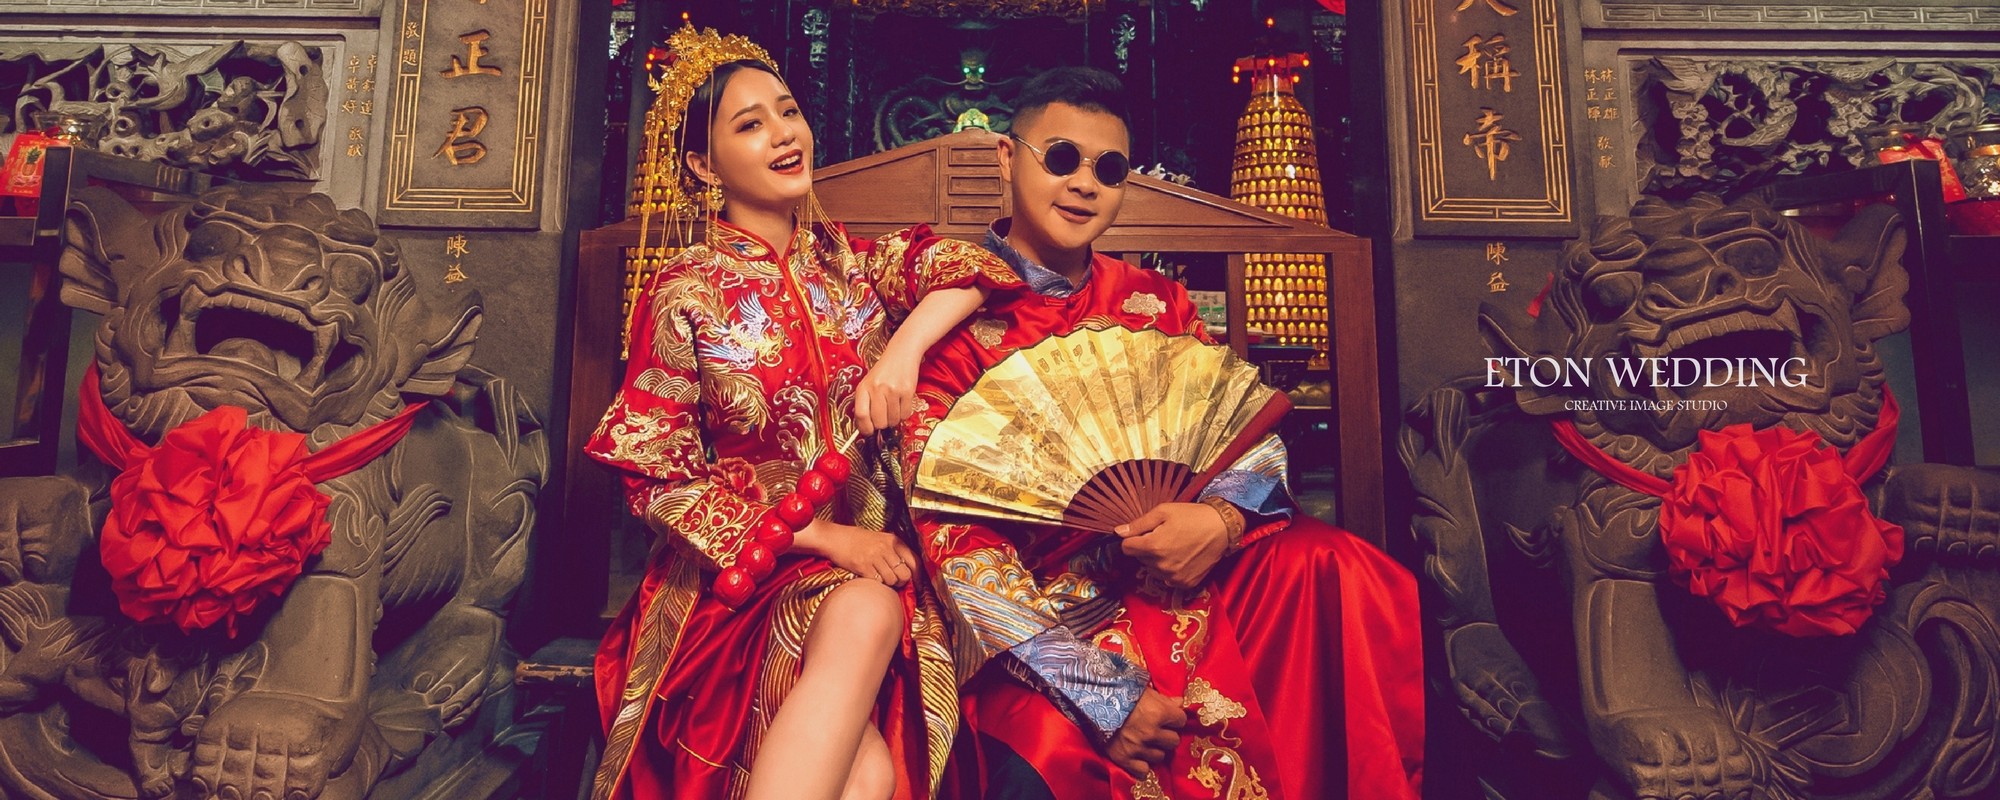 中式禮服,中式婚紗,秀禾服,龍鳳褂,中式婚紗照